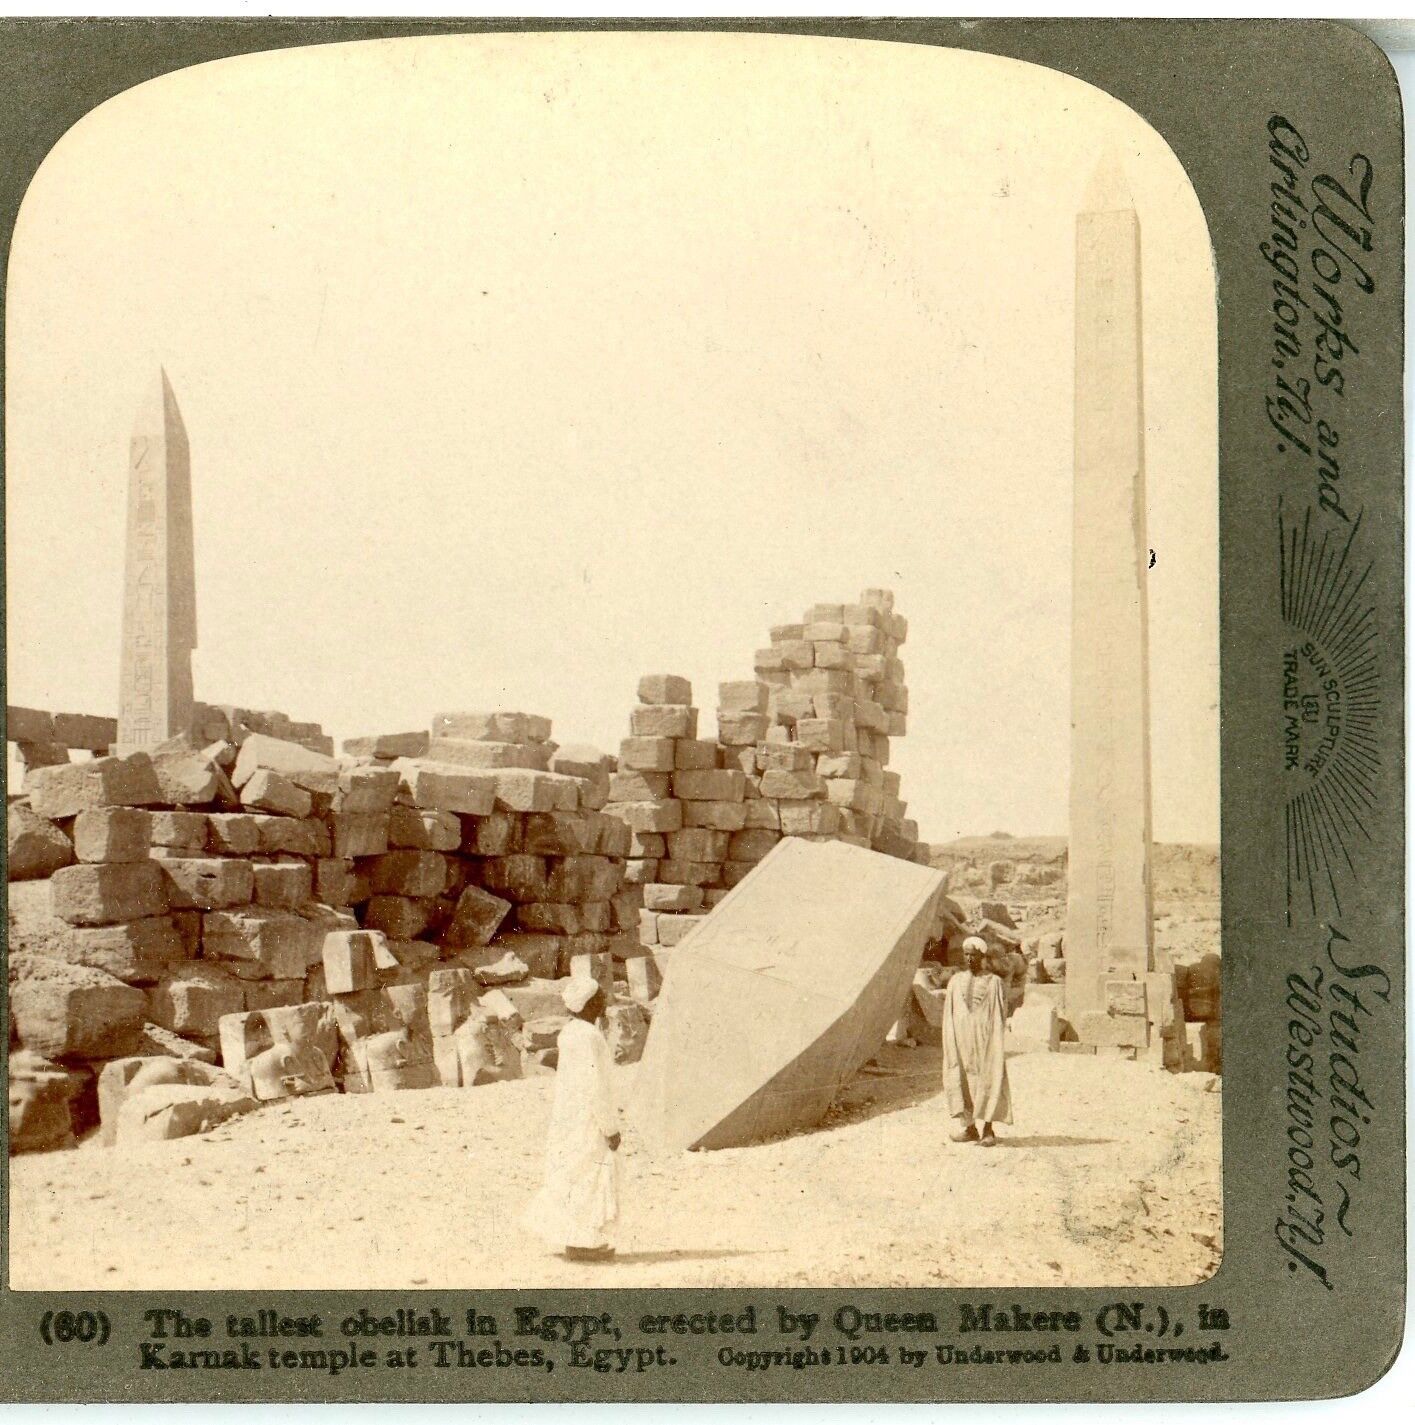 EGYPT, Tallest Obelisk in Egypt, Erected by Queen Makere, Karnak--Underwood #60